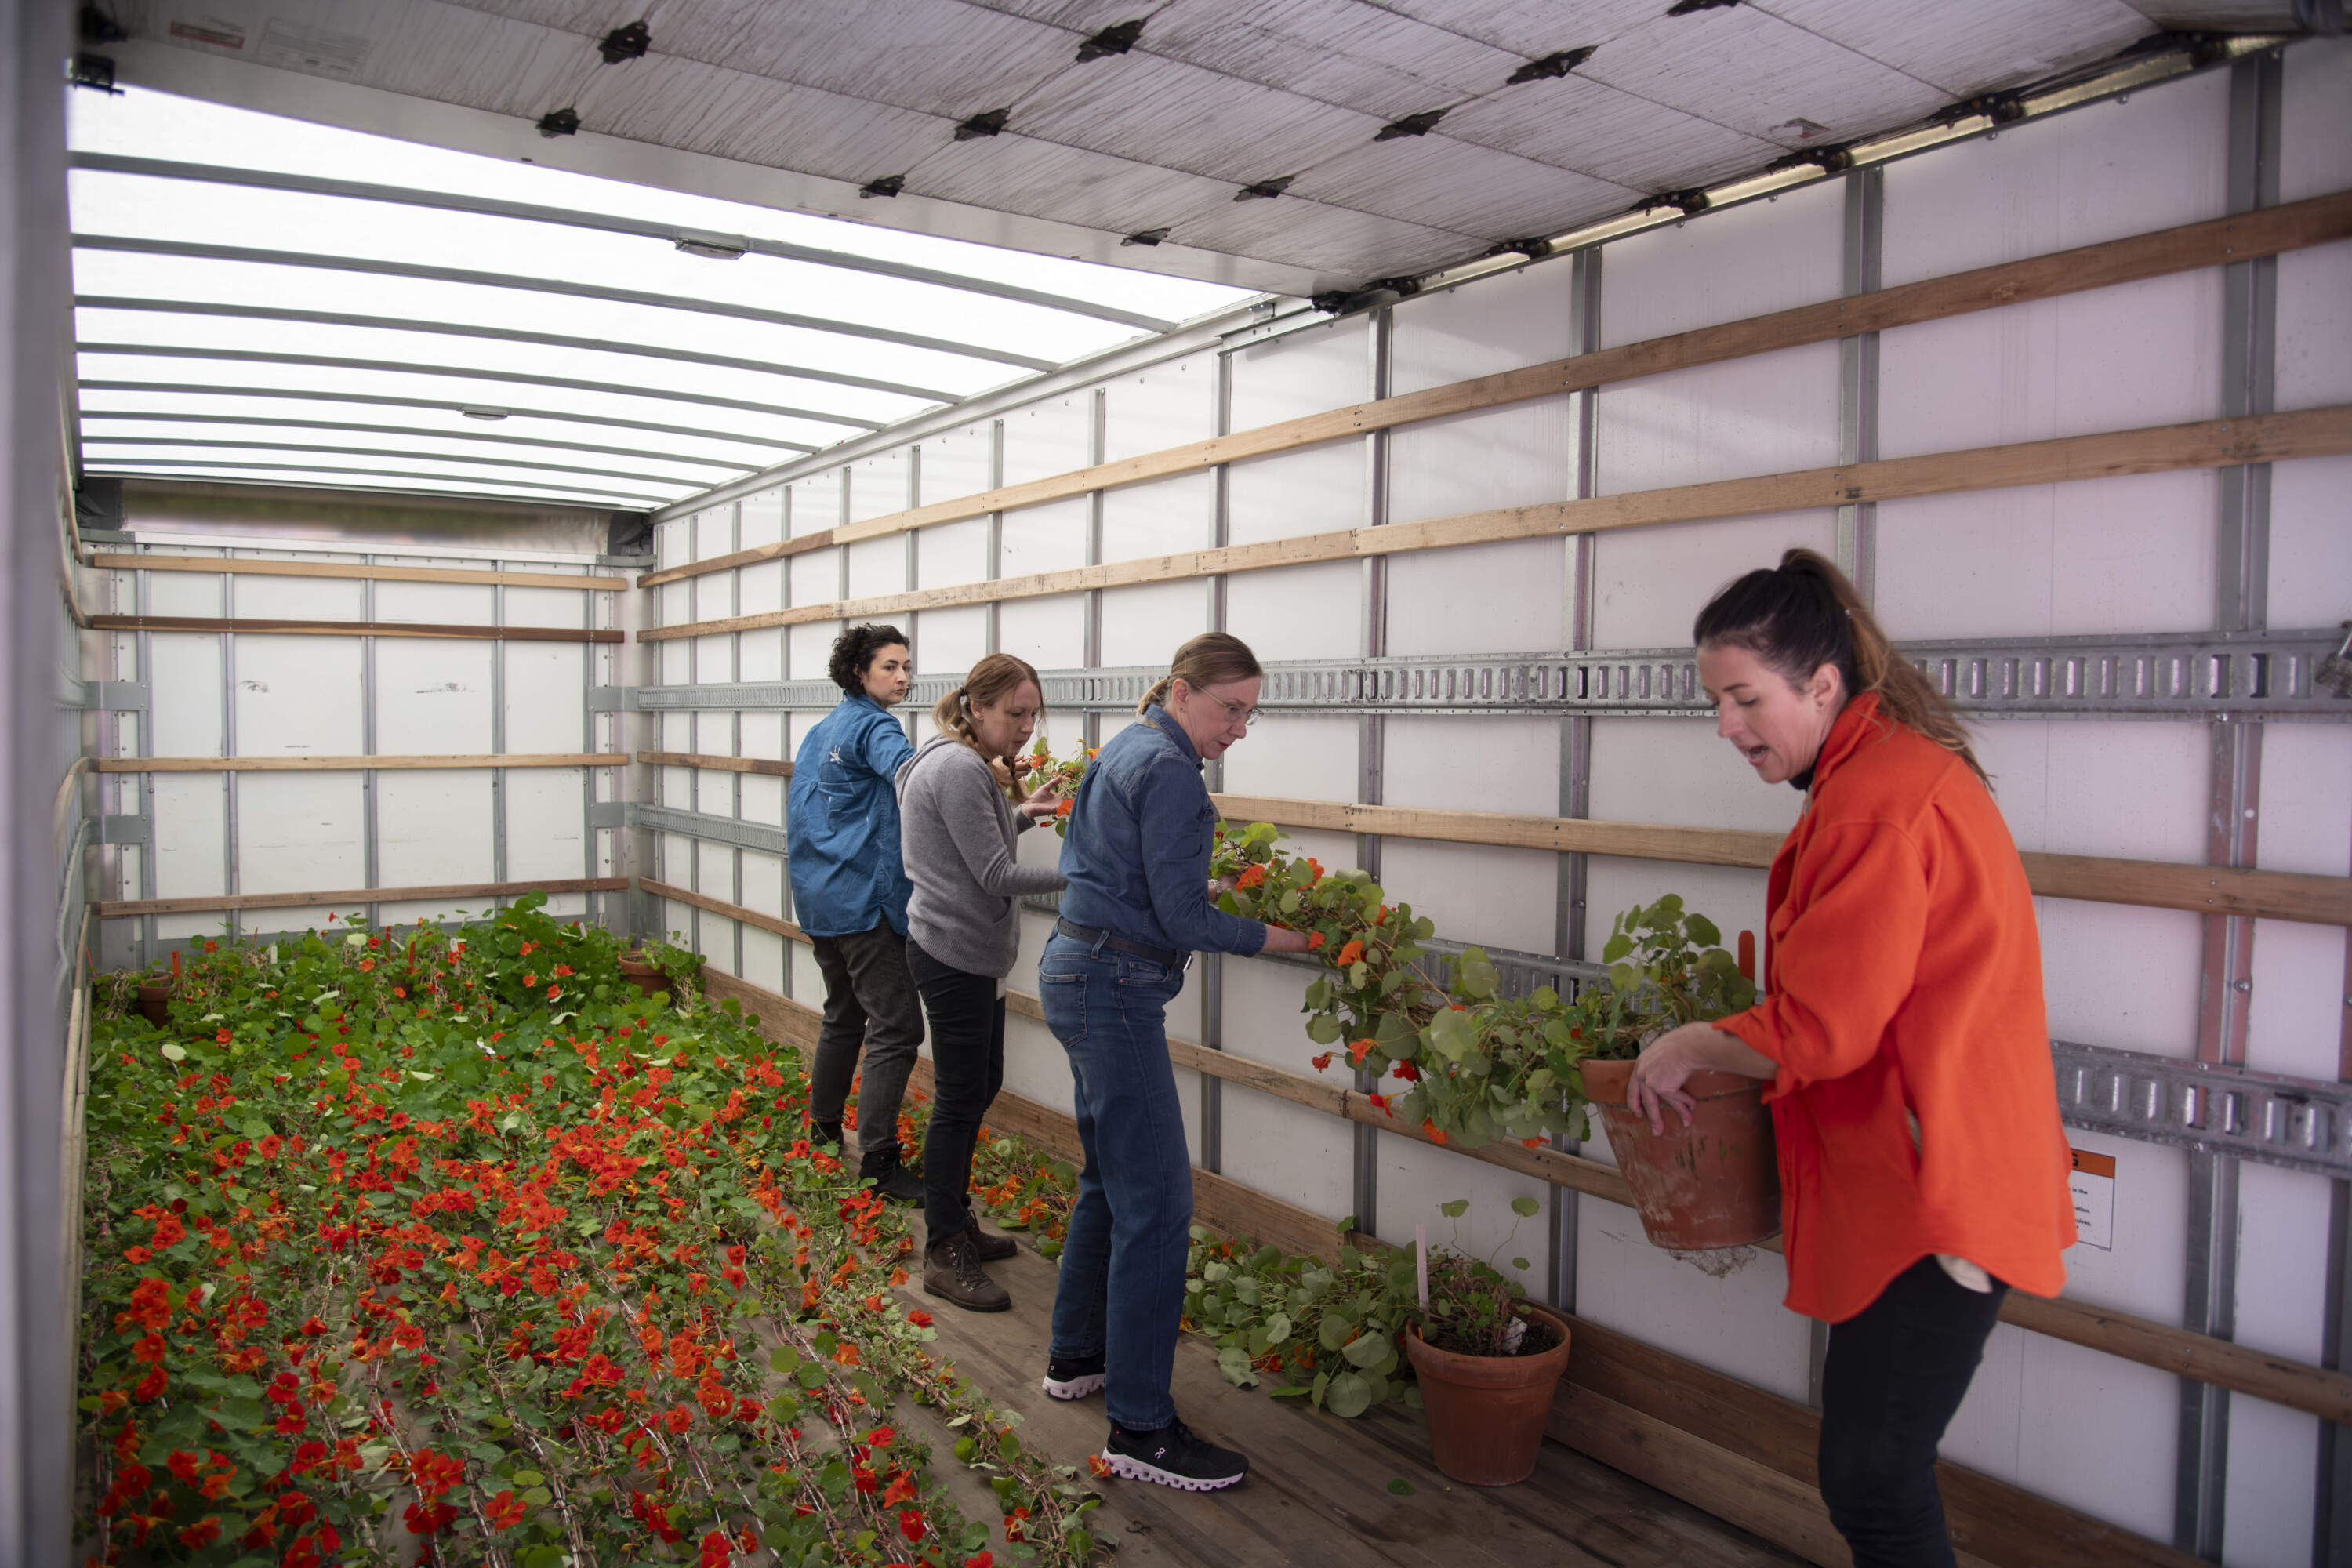 Horticulturist Erika Rumbley and her team unload nasturtium vines. (Photo courtesy of the Isabella Stewart Gardner Museum)